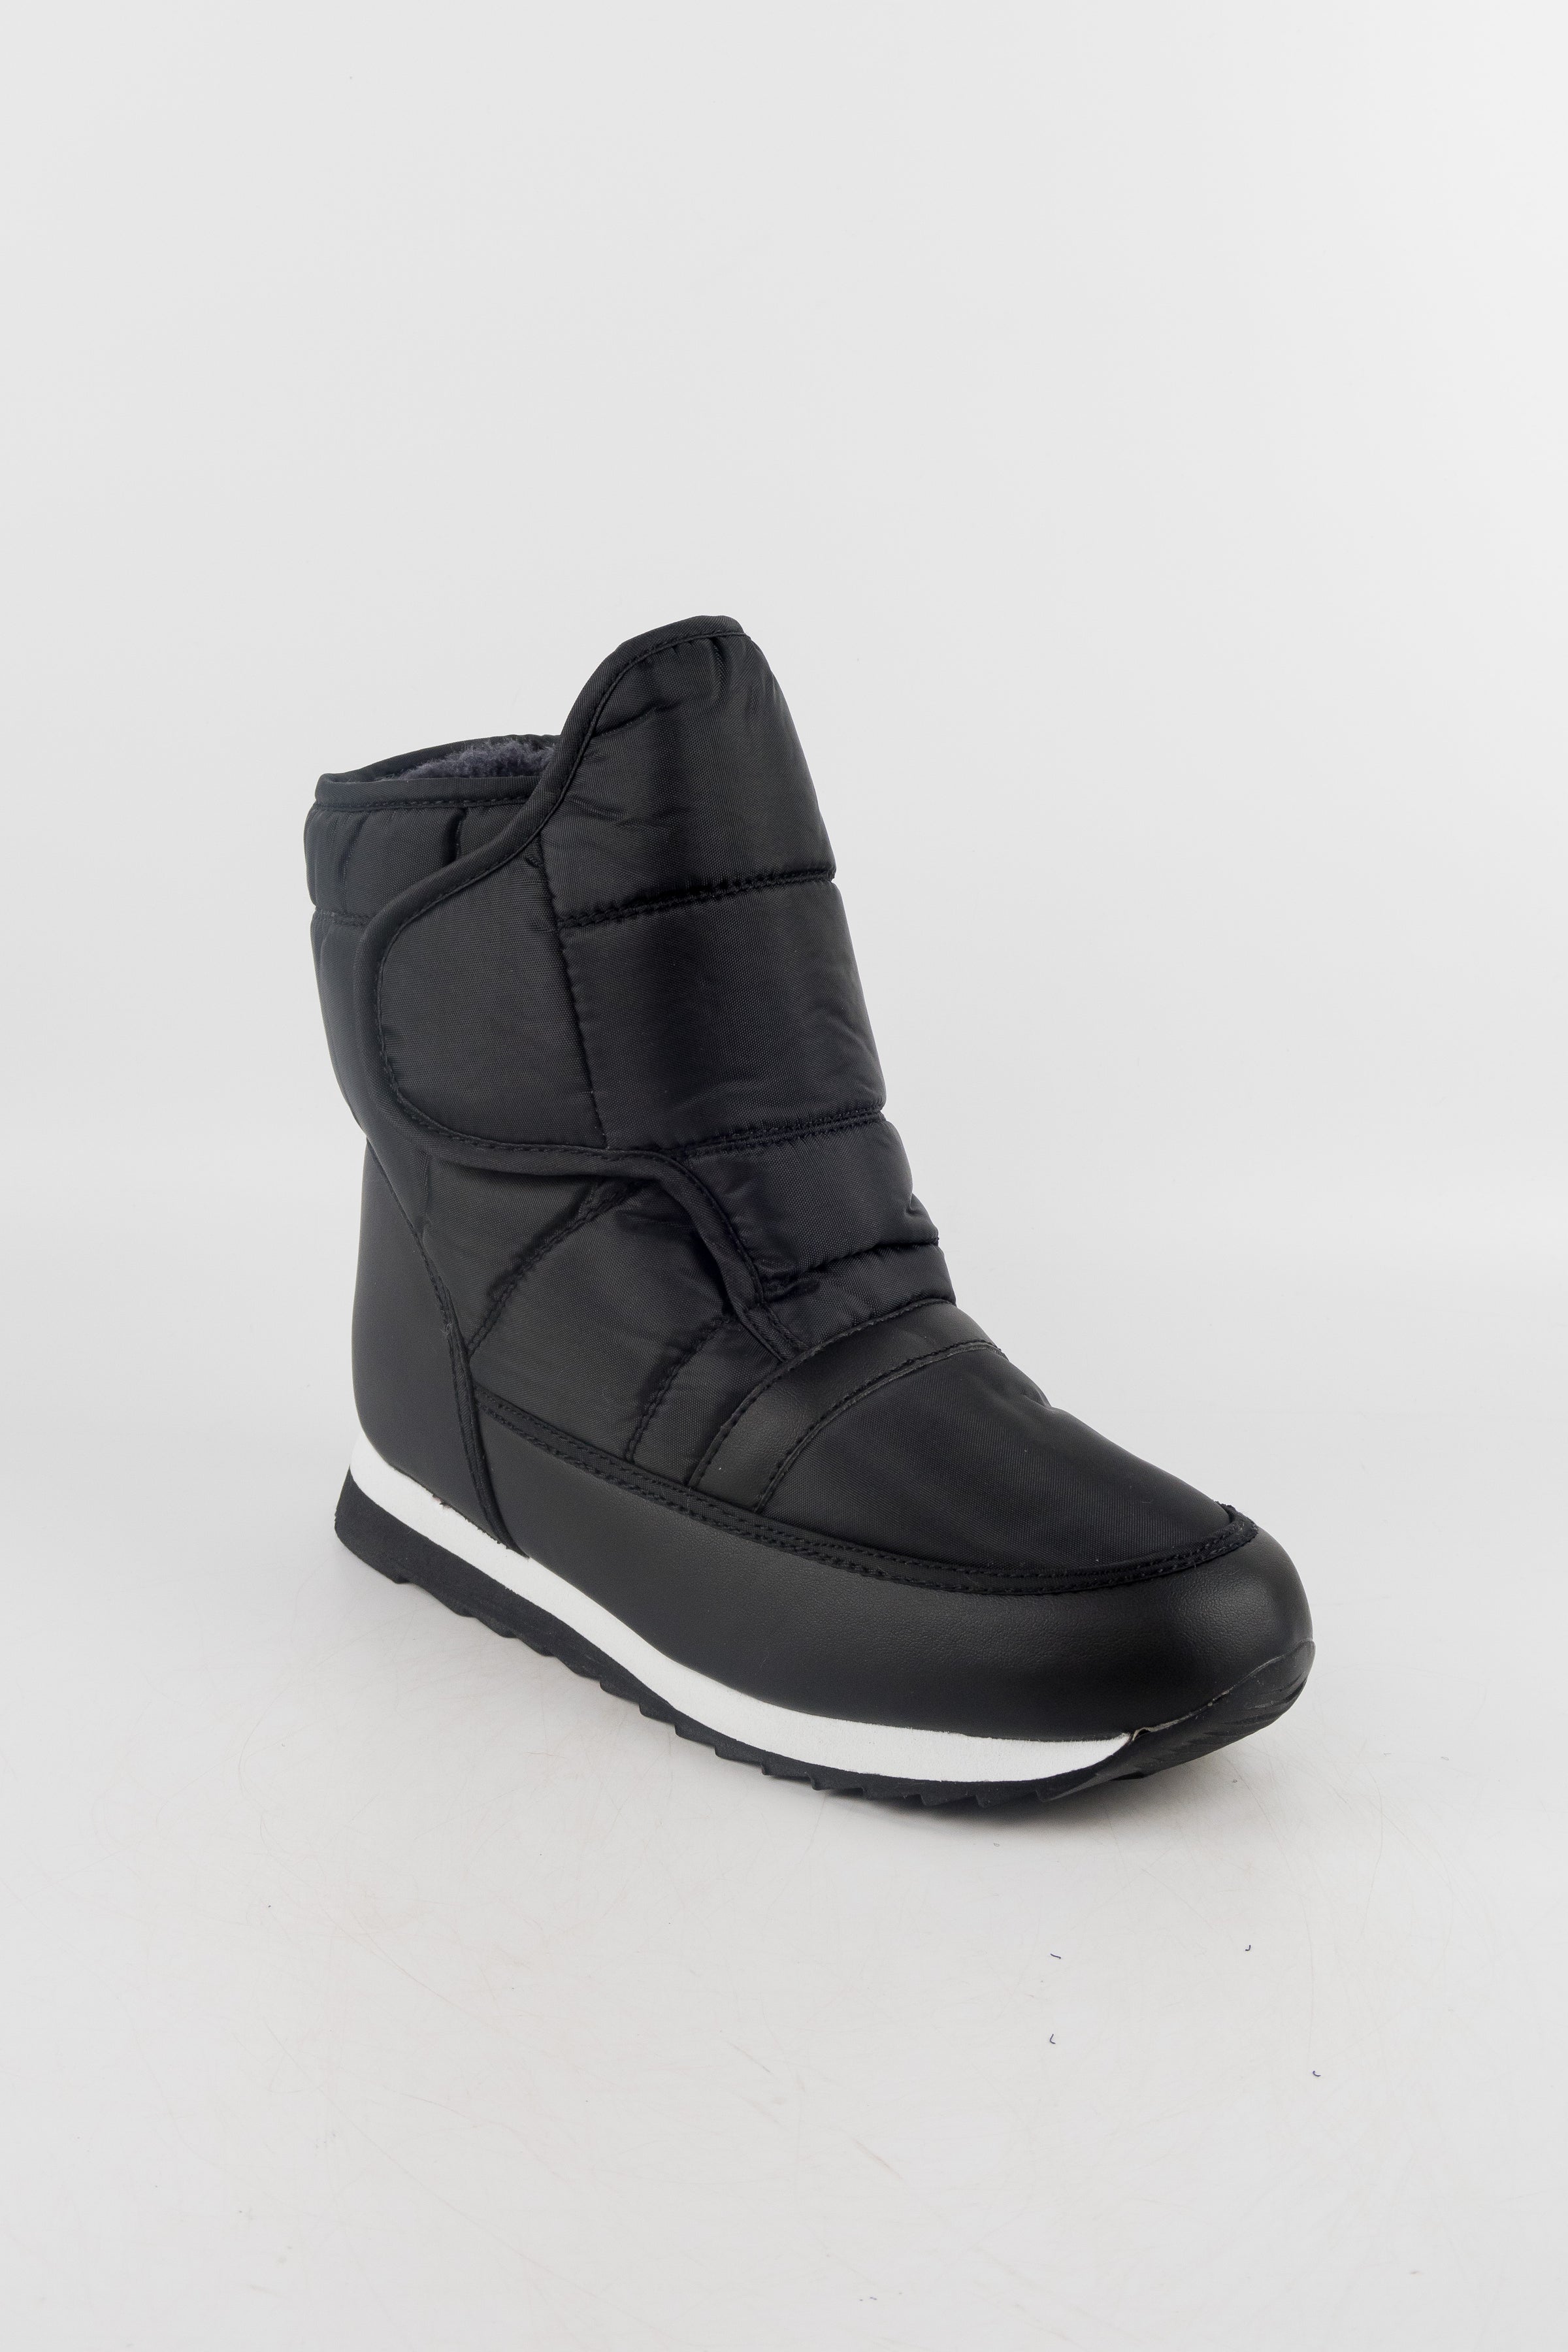 รองเท้าบูทกันหนาว กันหิมะ พร้อมตัวล็อค - Winter Non-Slip Windproof Snow Boots